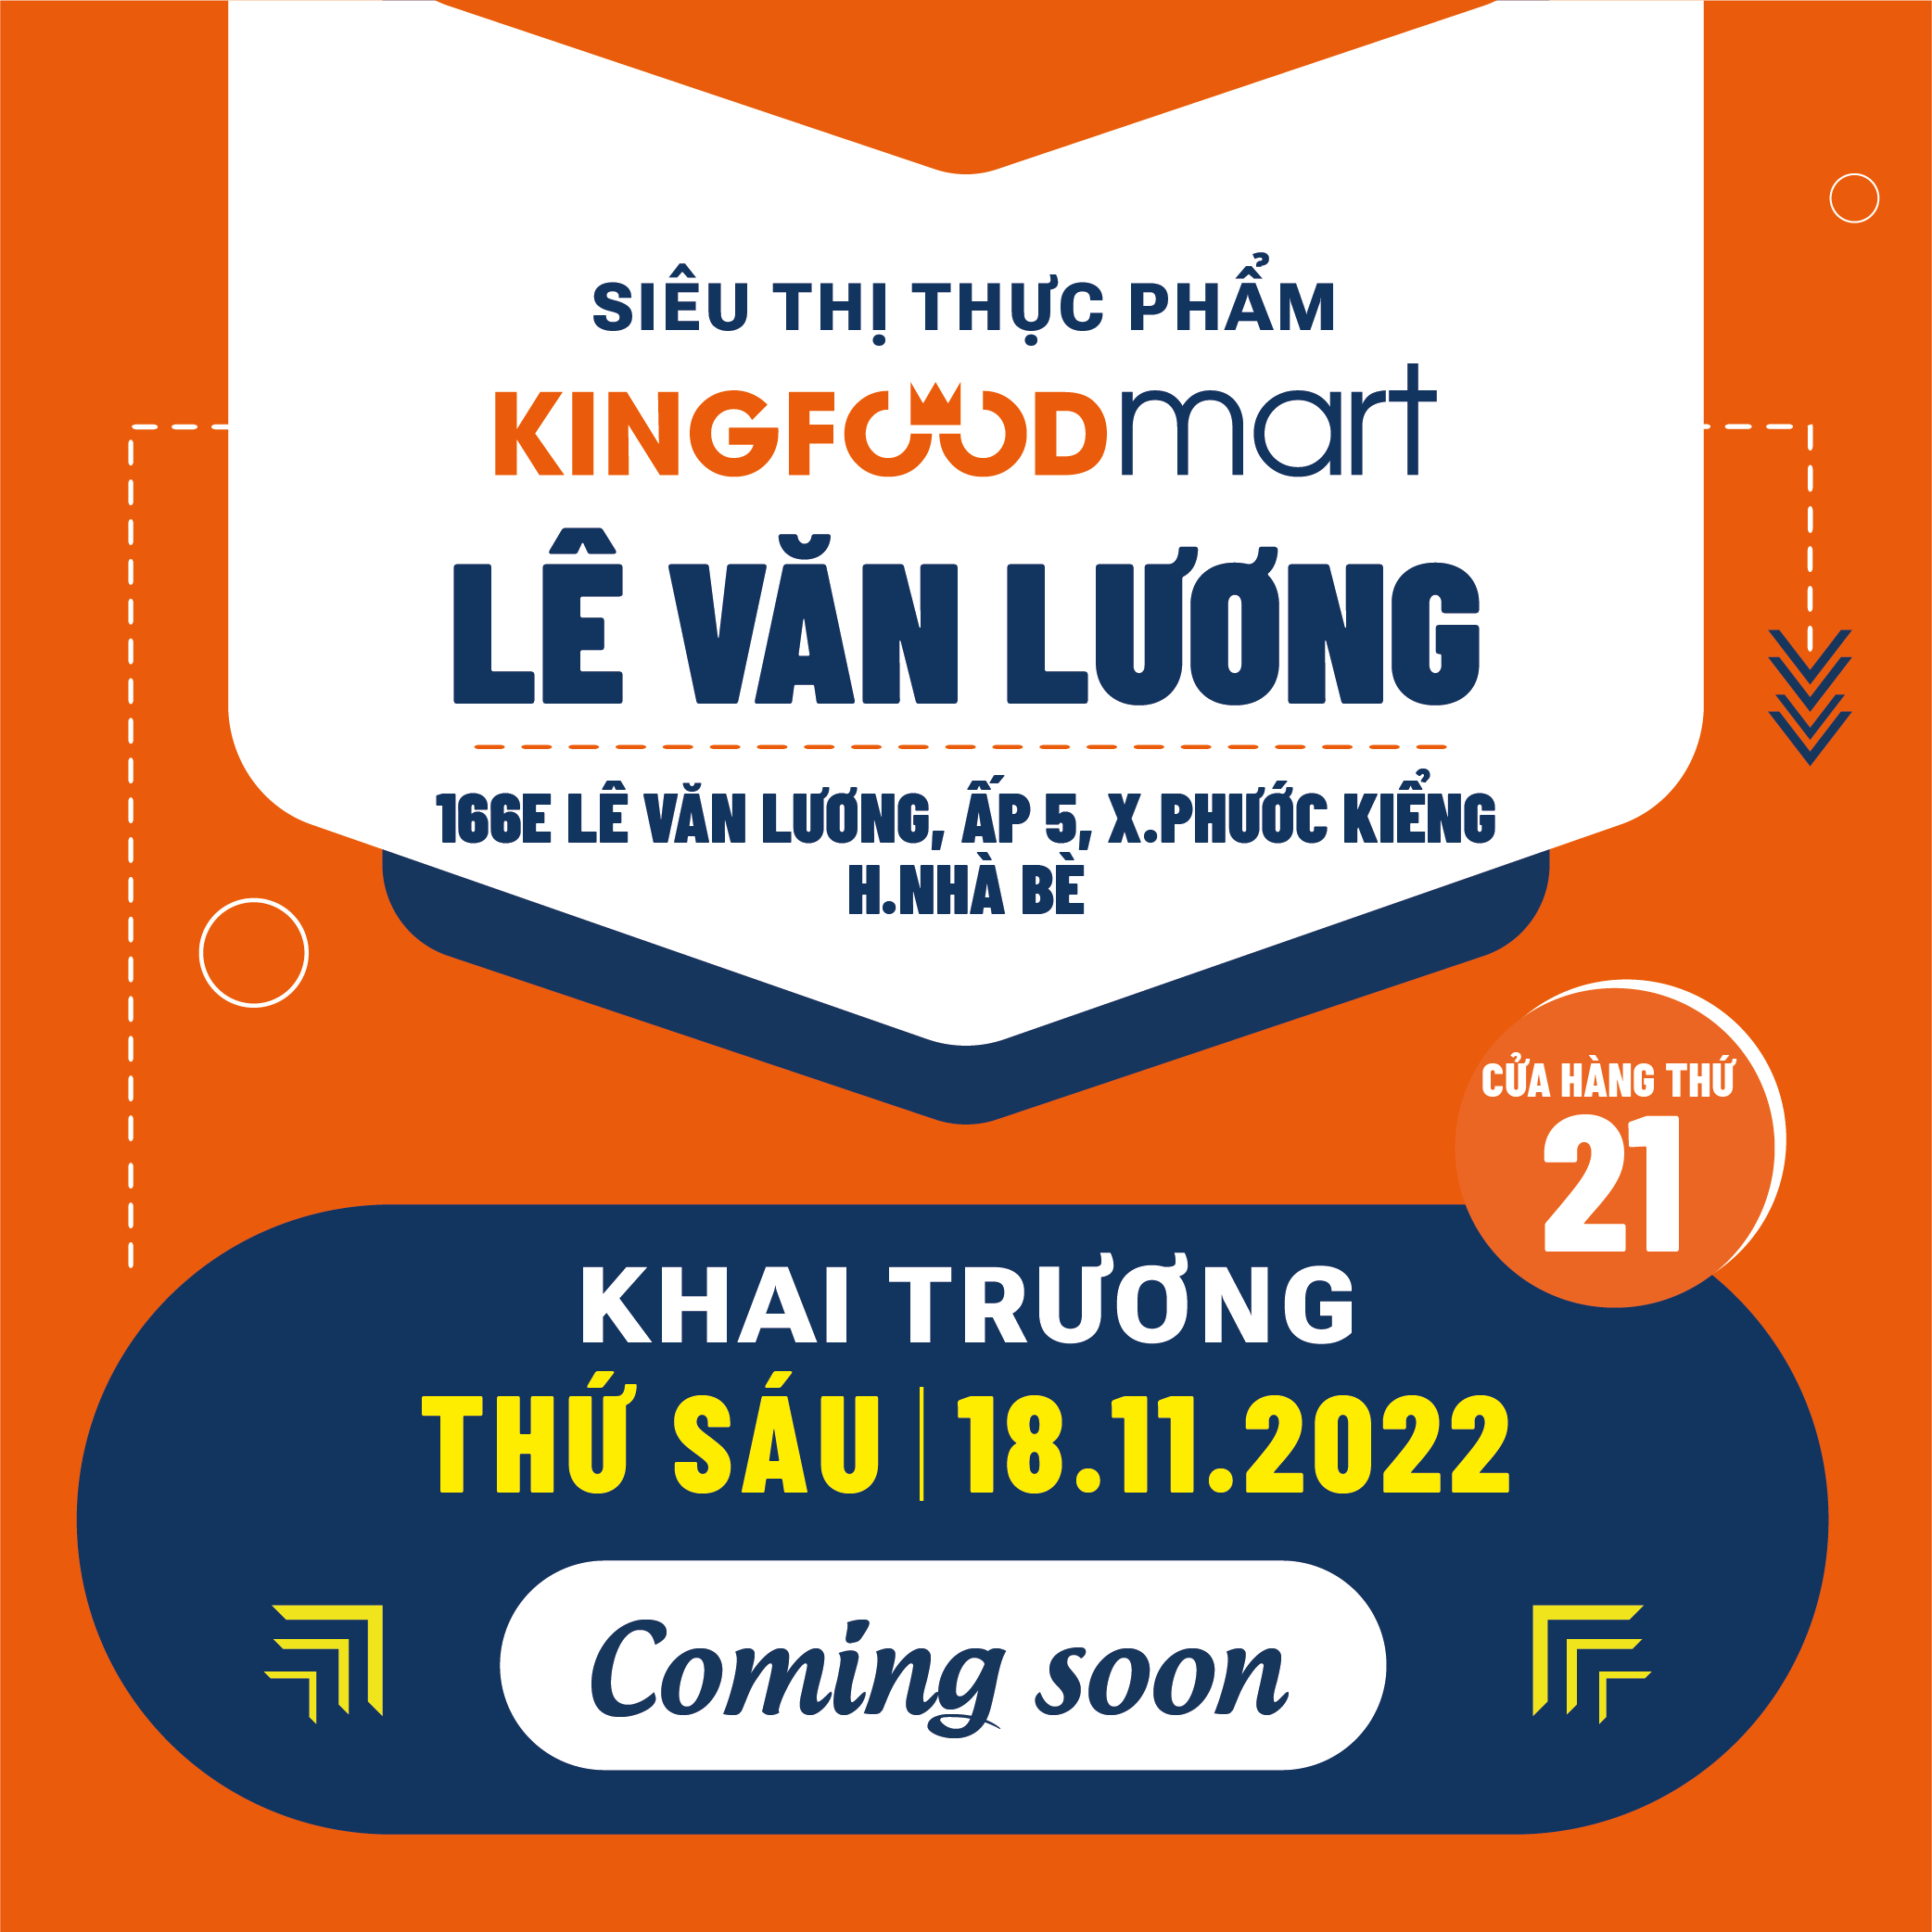 Ưu đãi tưng bừng – Mừng khai trương Kingfoodmart Lê Văn Lương